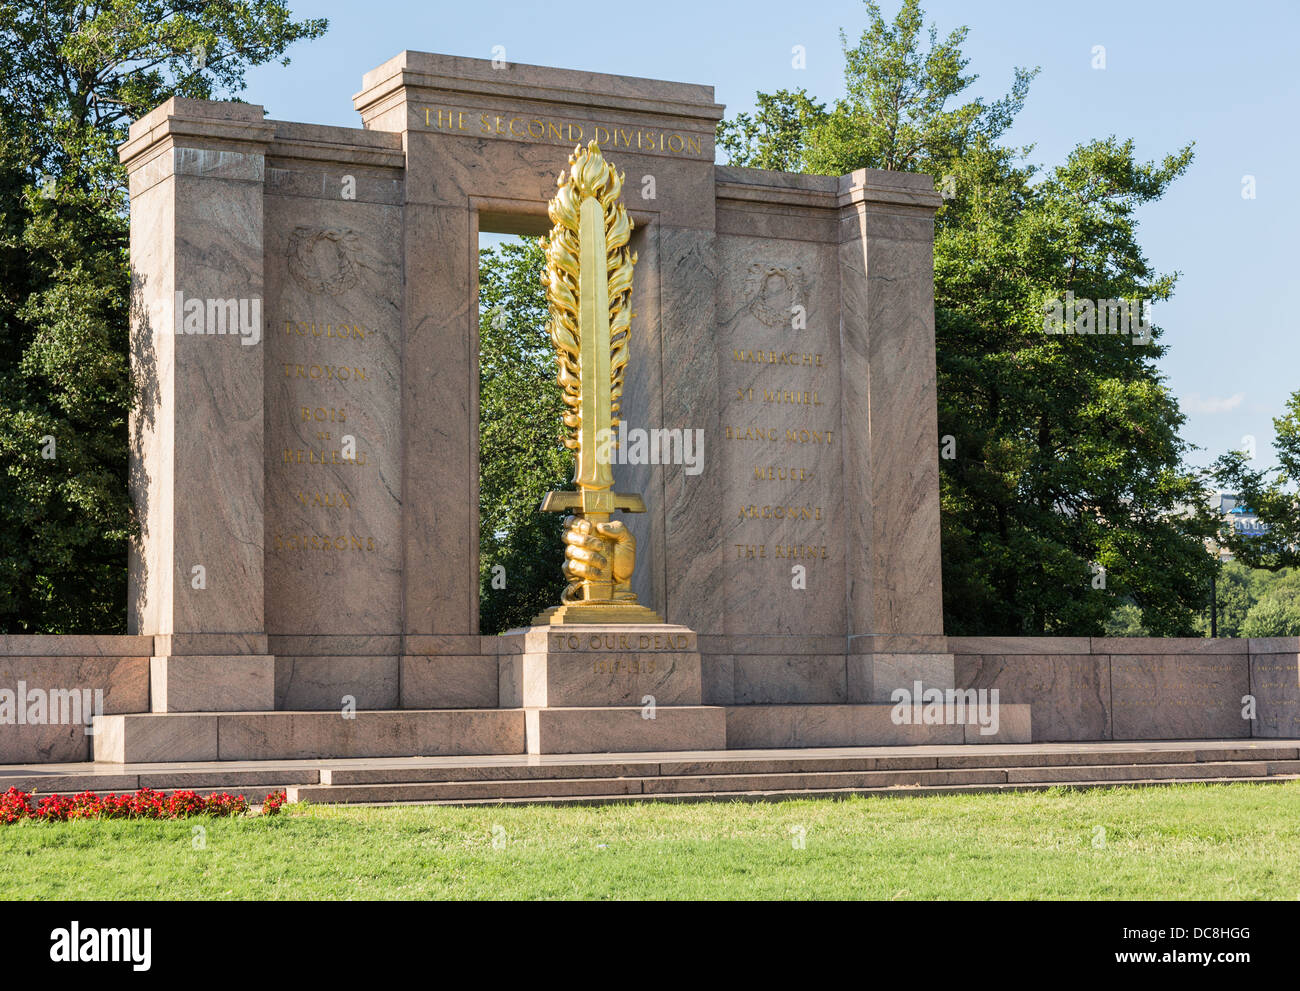 Deuxième Division Monument à la Première Guerre mondiale, les soldats de l'Armée US President's Park à Washington, DC, USA Banque D'Images